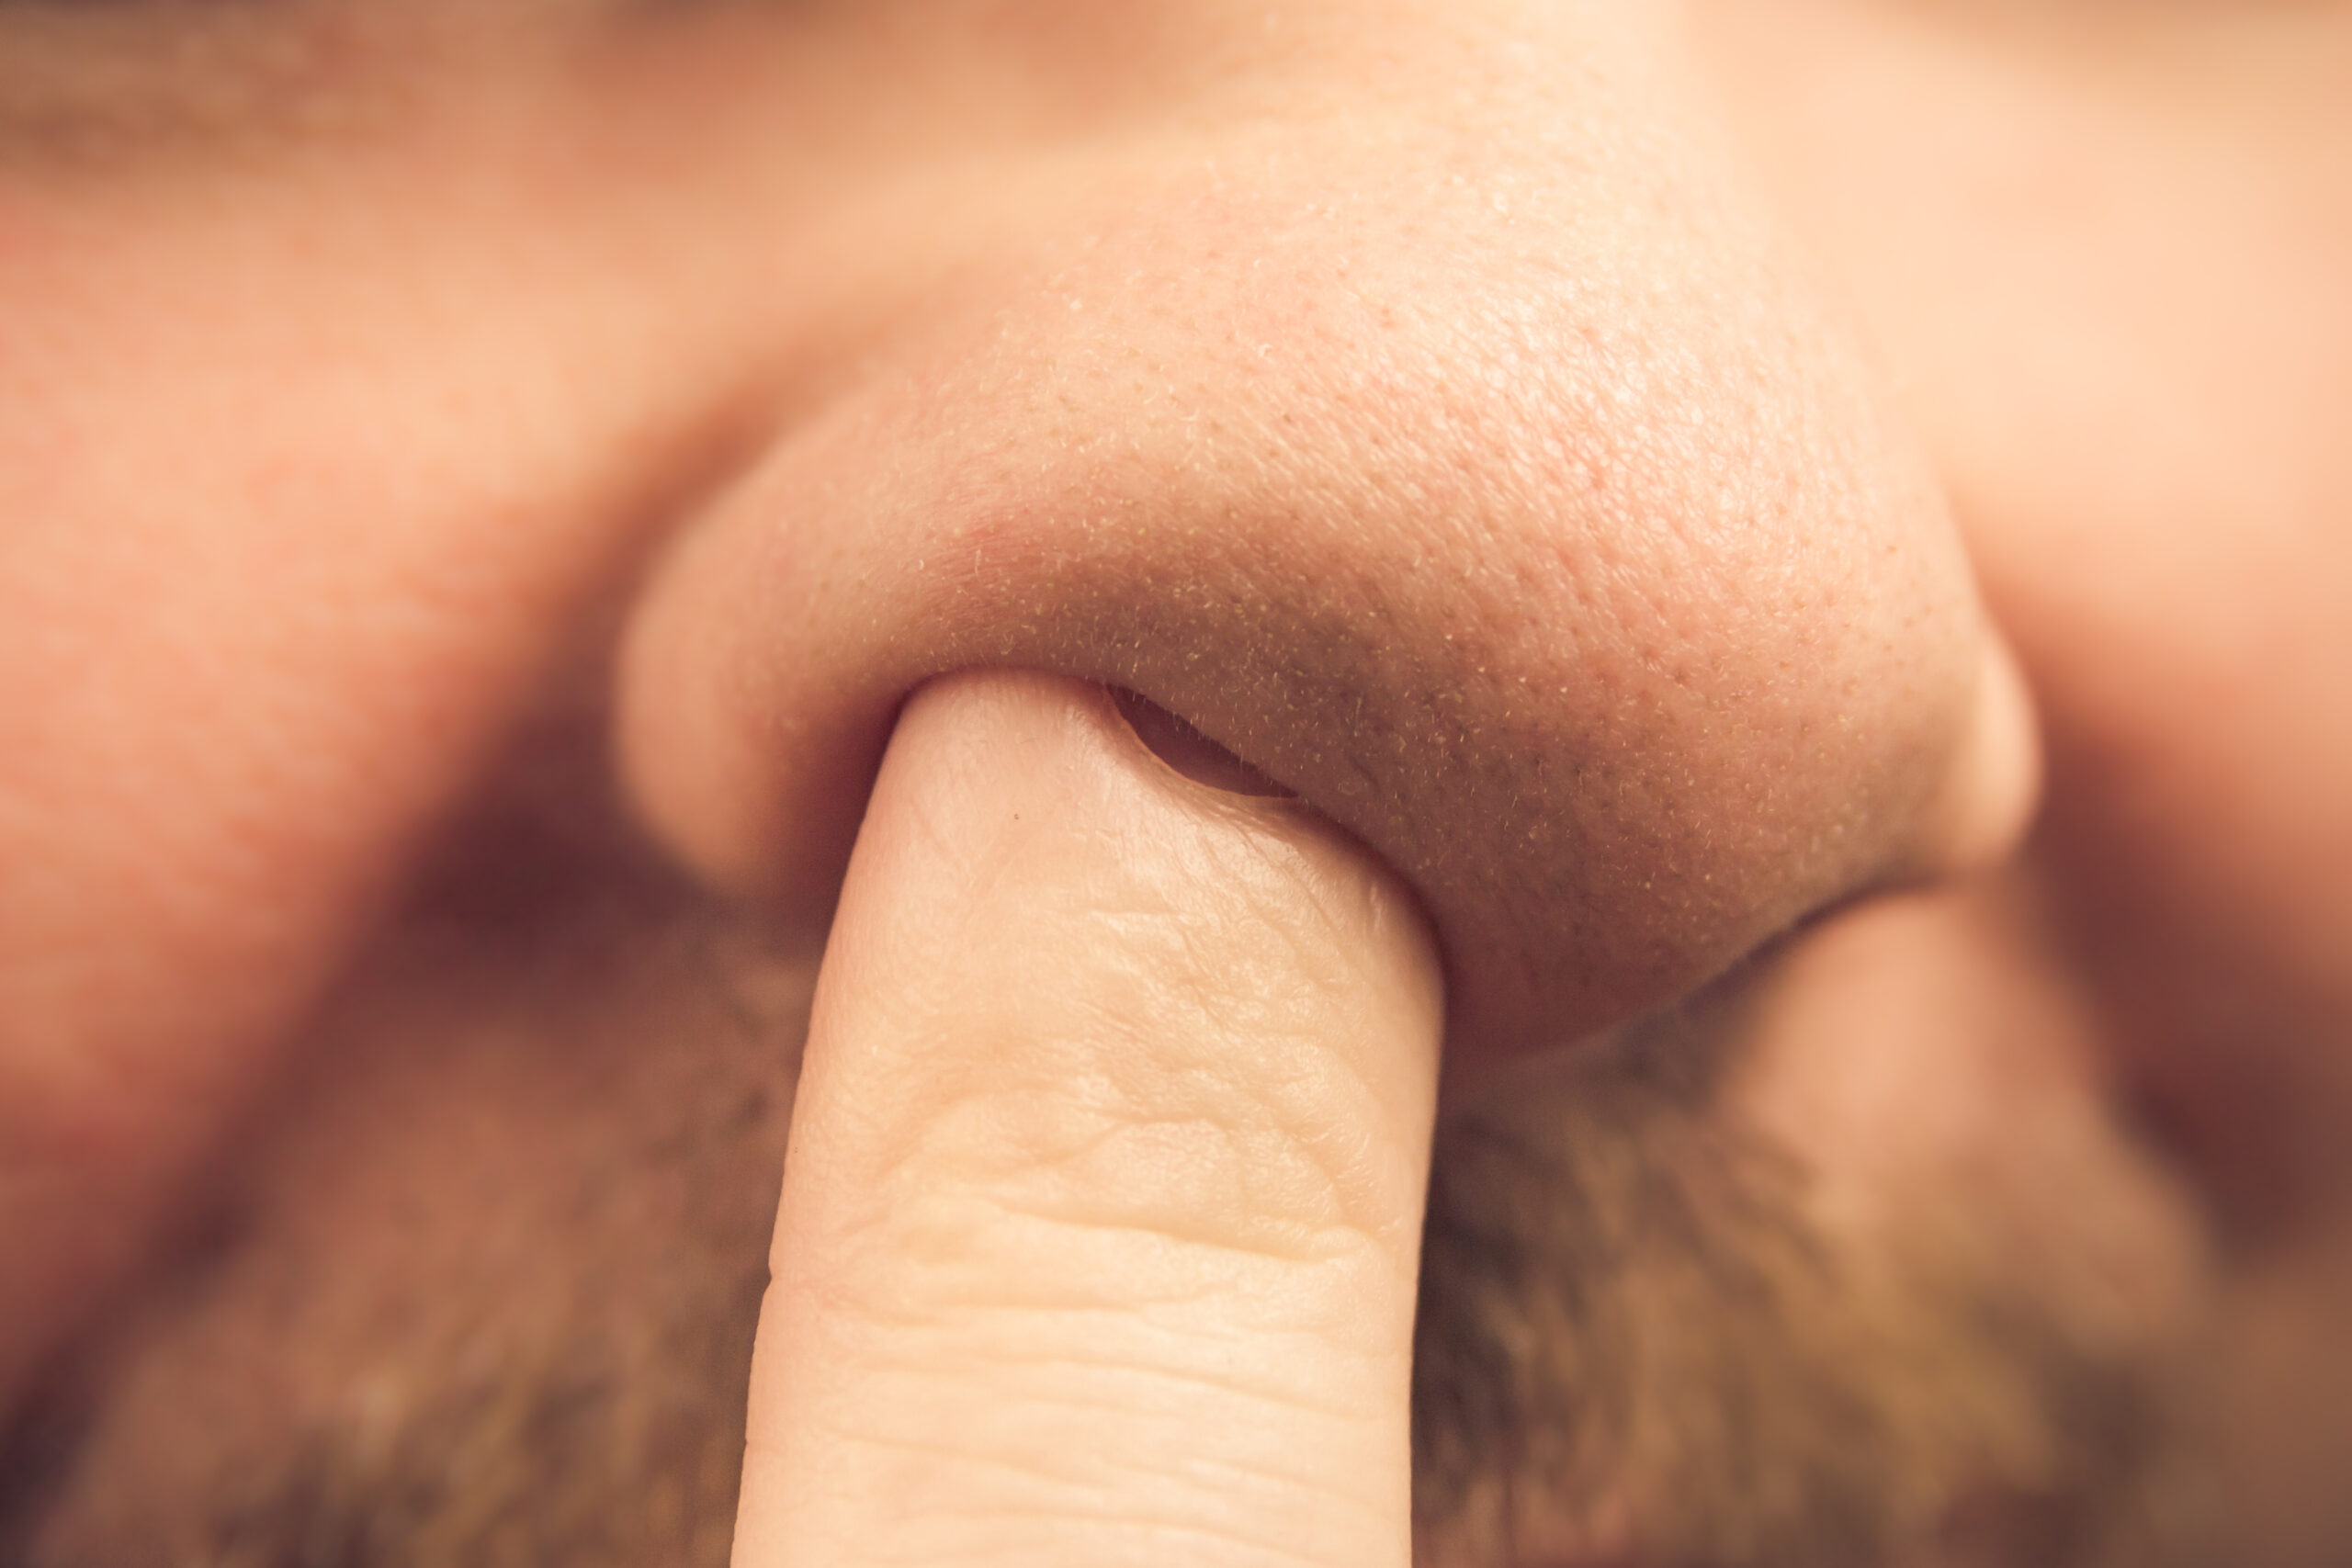 Um dos autores do estudo orienta que as pessoas evitem colocar dedo no nariz